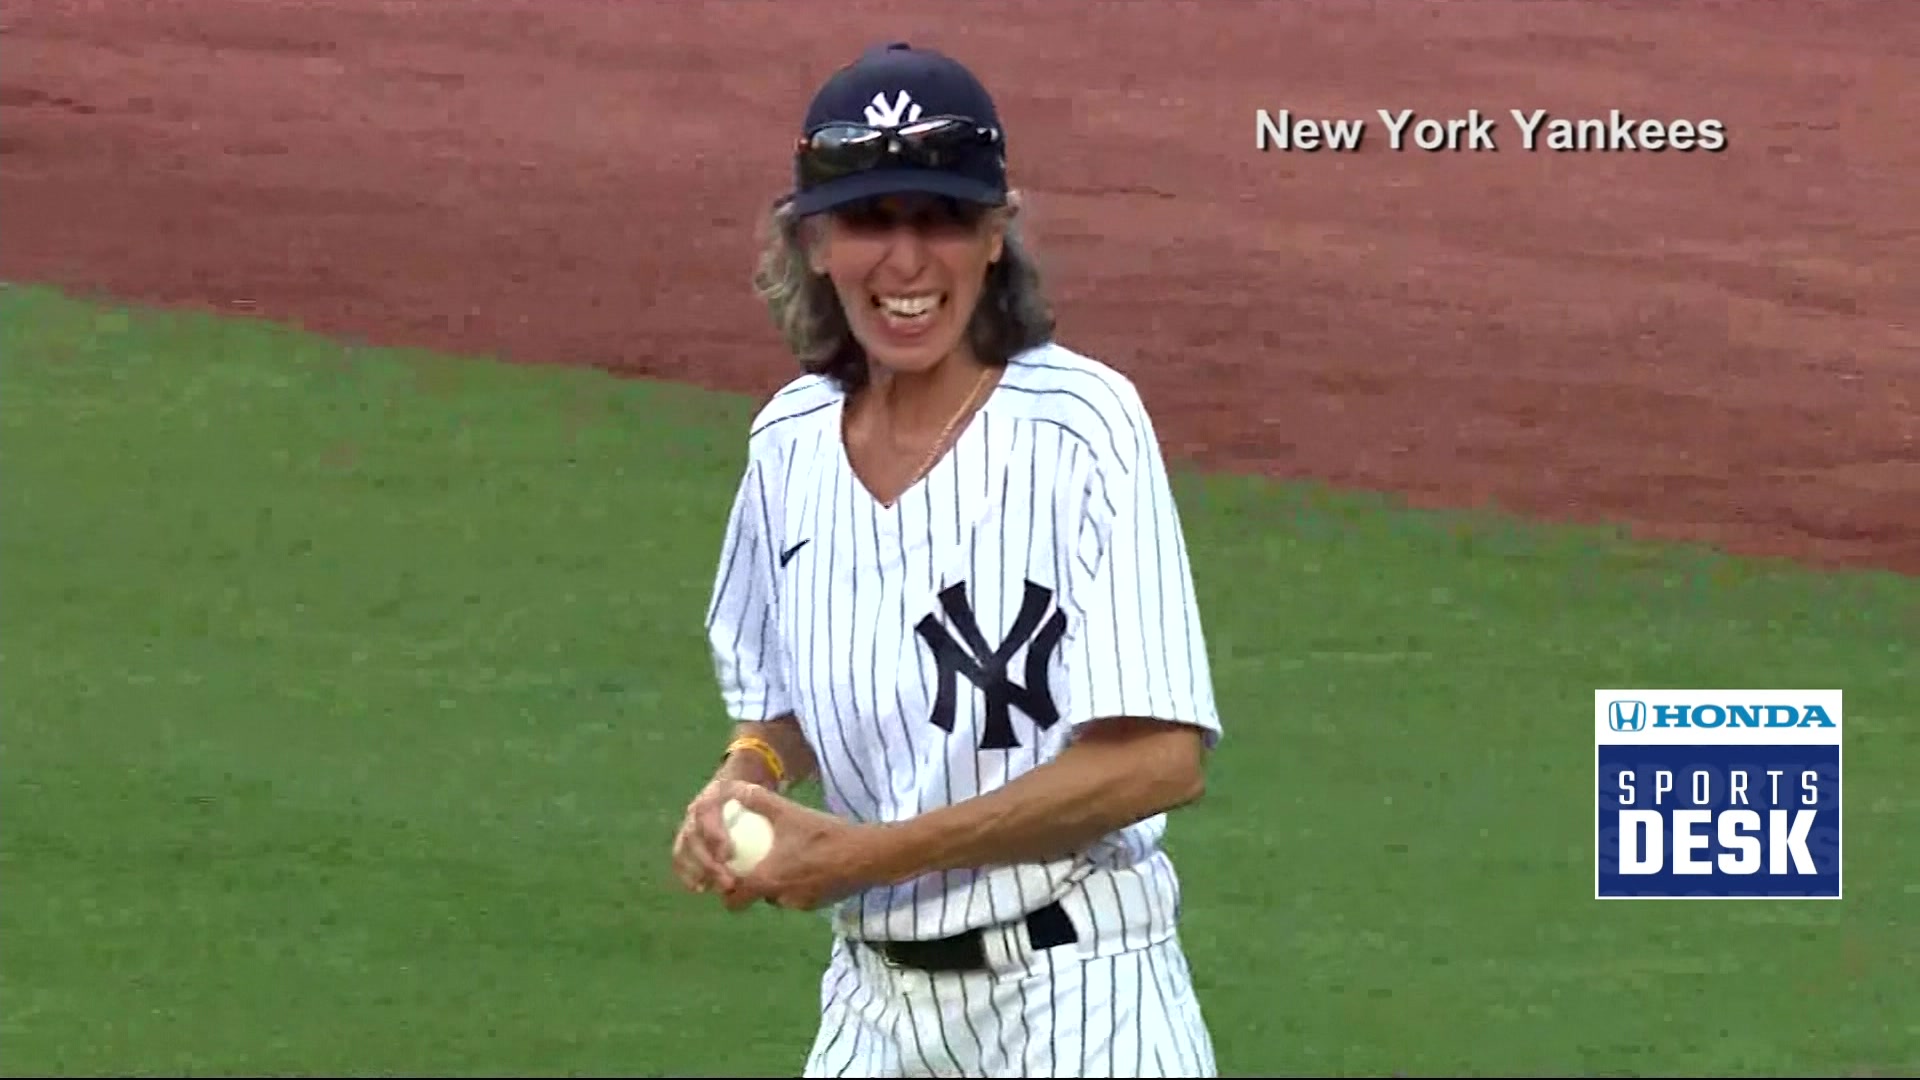 She's up! Bat girl 60 years in making reaches Yankee Stadium